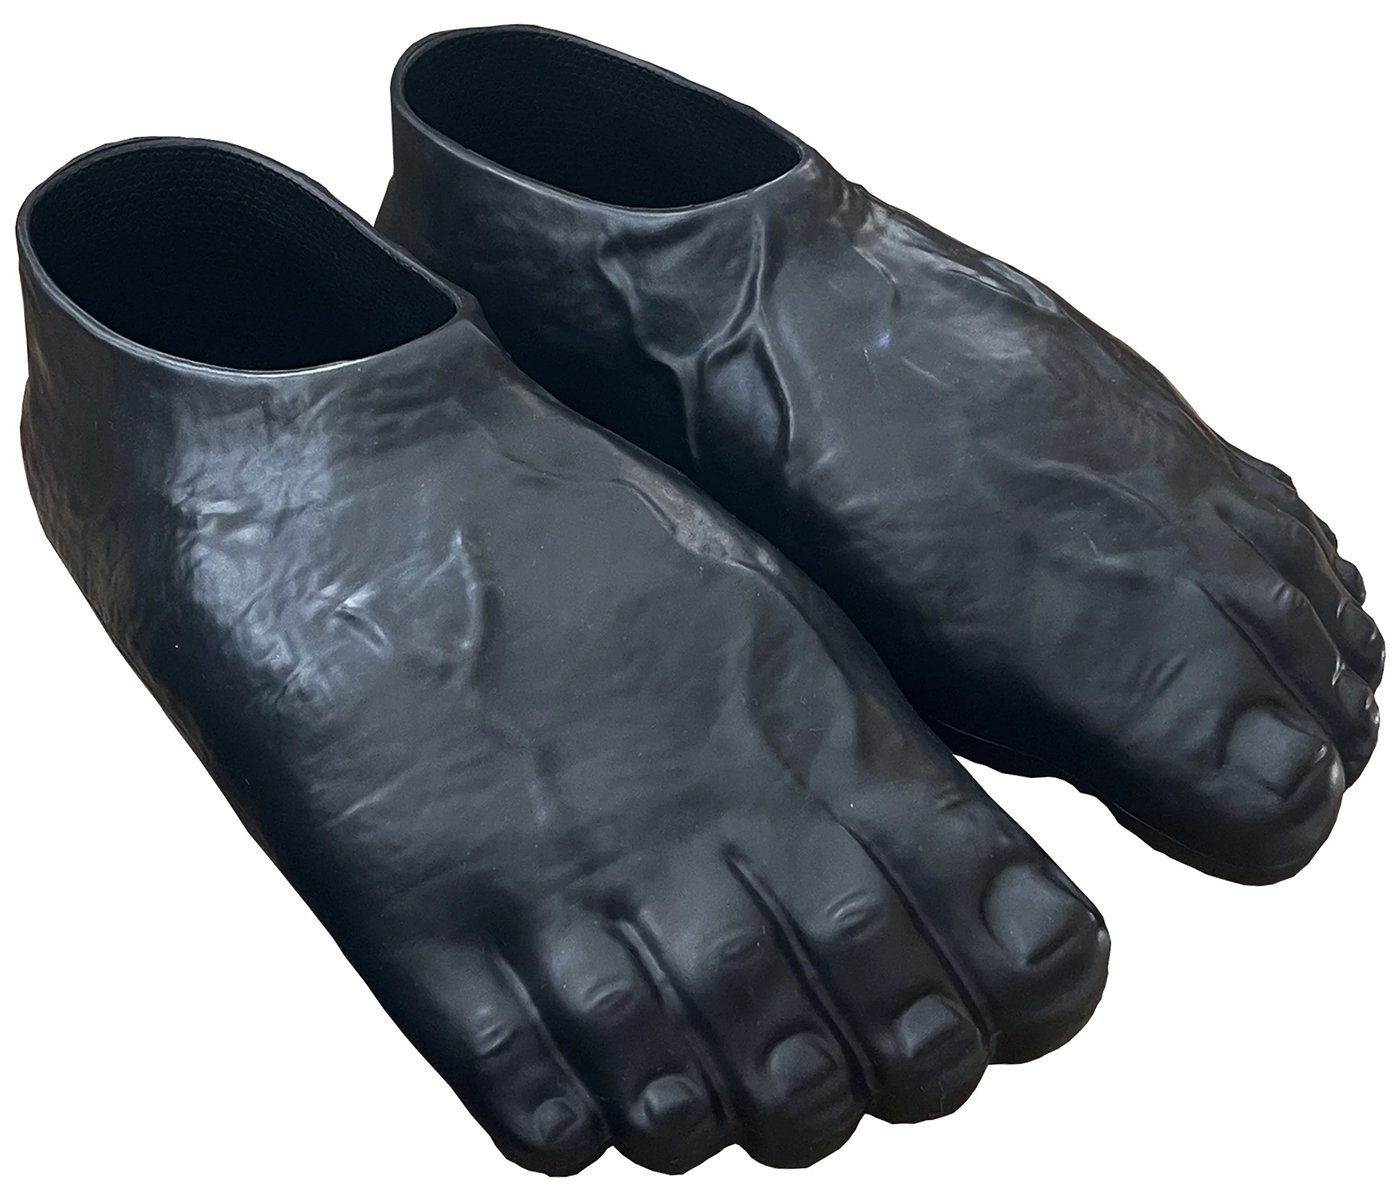 Imran Potato Caveman Slippers Black Men's - 13202301241137-02 - US